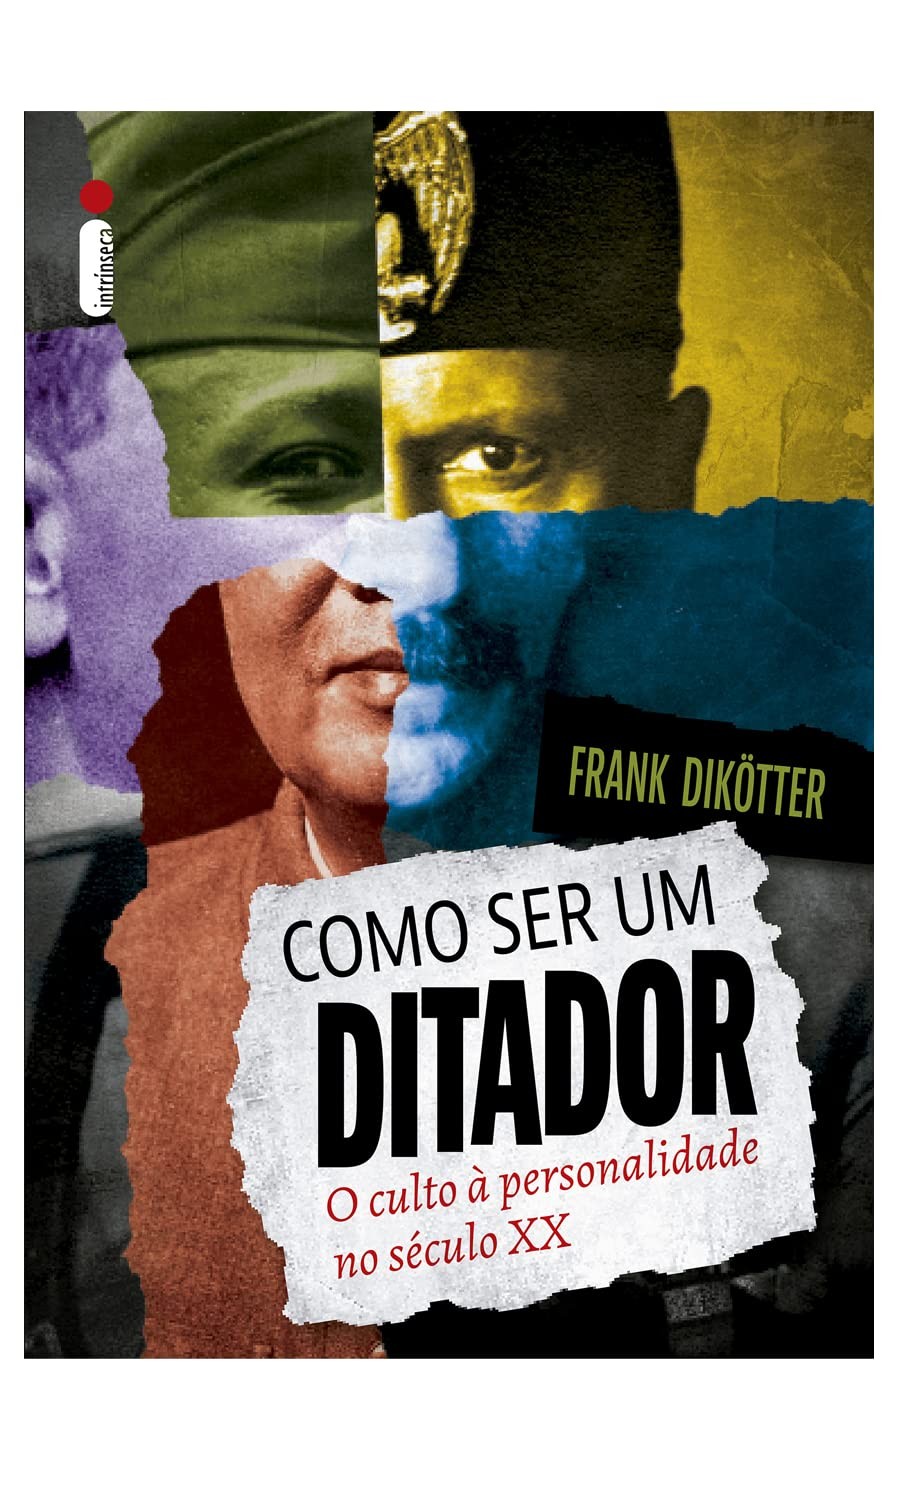 Como ser um ditador: o culto à personalidade no século XX, de Frank Dikötter (Intrínseca, 368 páginas, • Impresso: R$ 69,90 | E-book: R$ 46,90) (Foto: Divulgação)